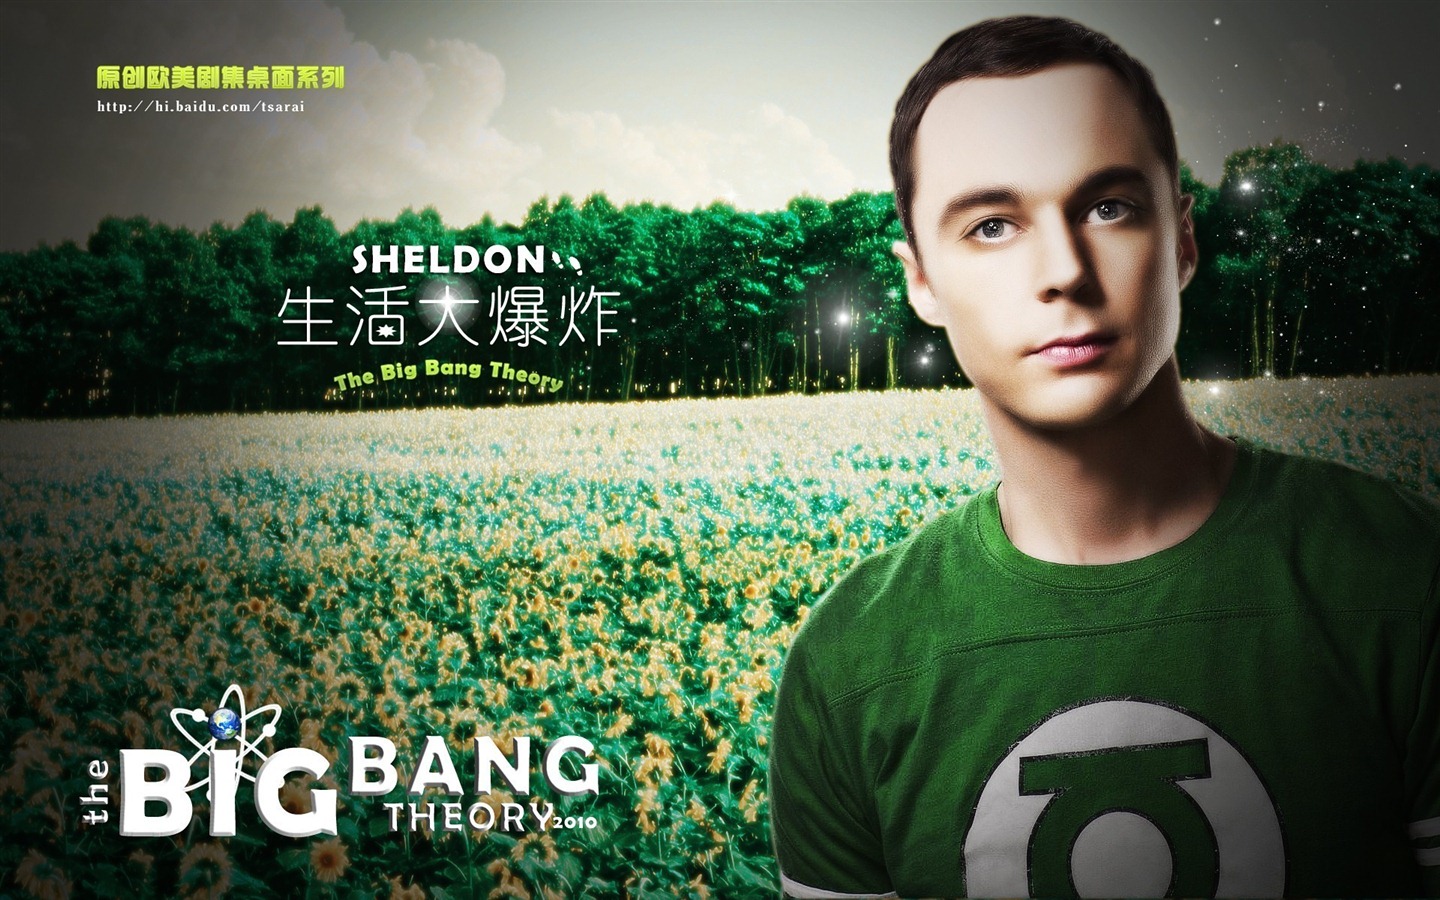 The Big Bang Theory TV Series HD wallpapers #16 - 1440x900